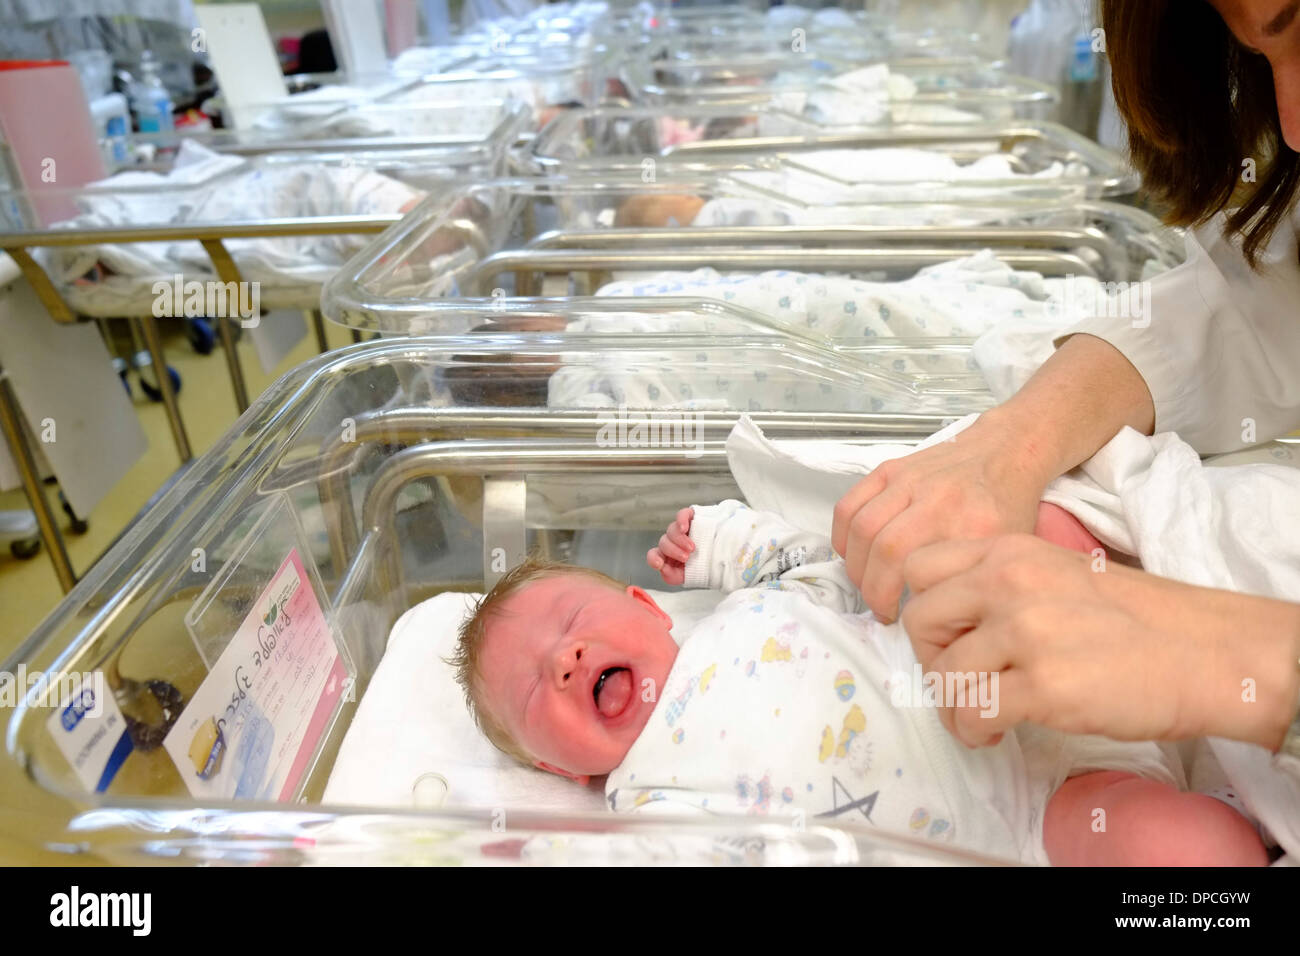 Arzt untersucht ein neugeborenes Kind in einer Entbindungsstation Stockfoto